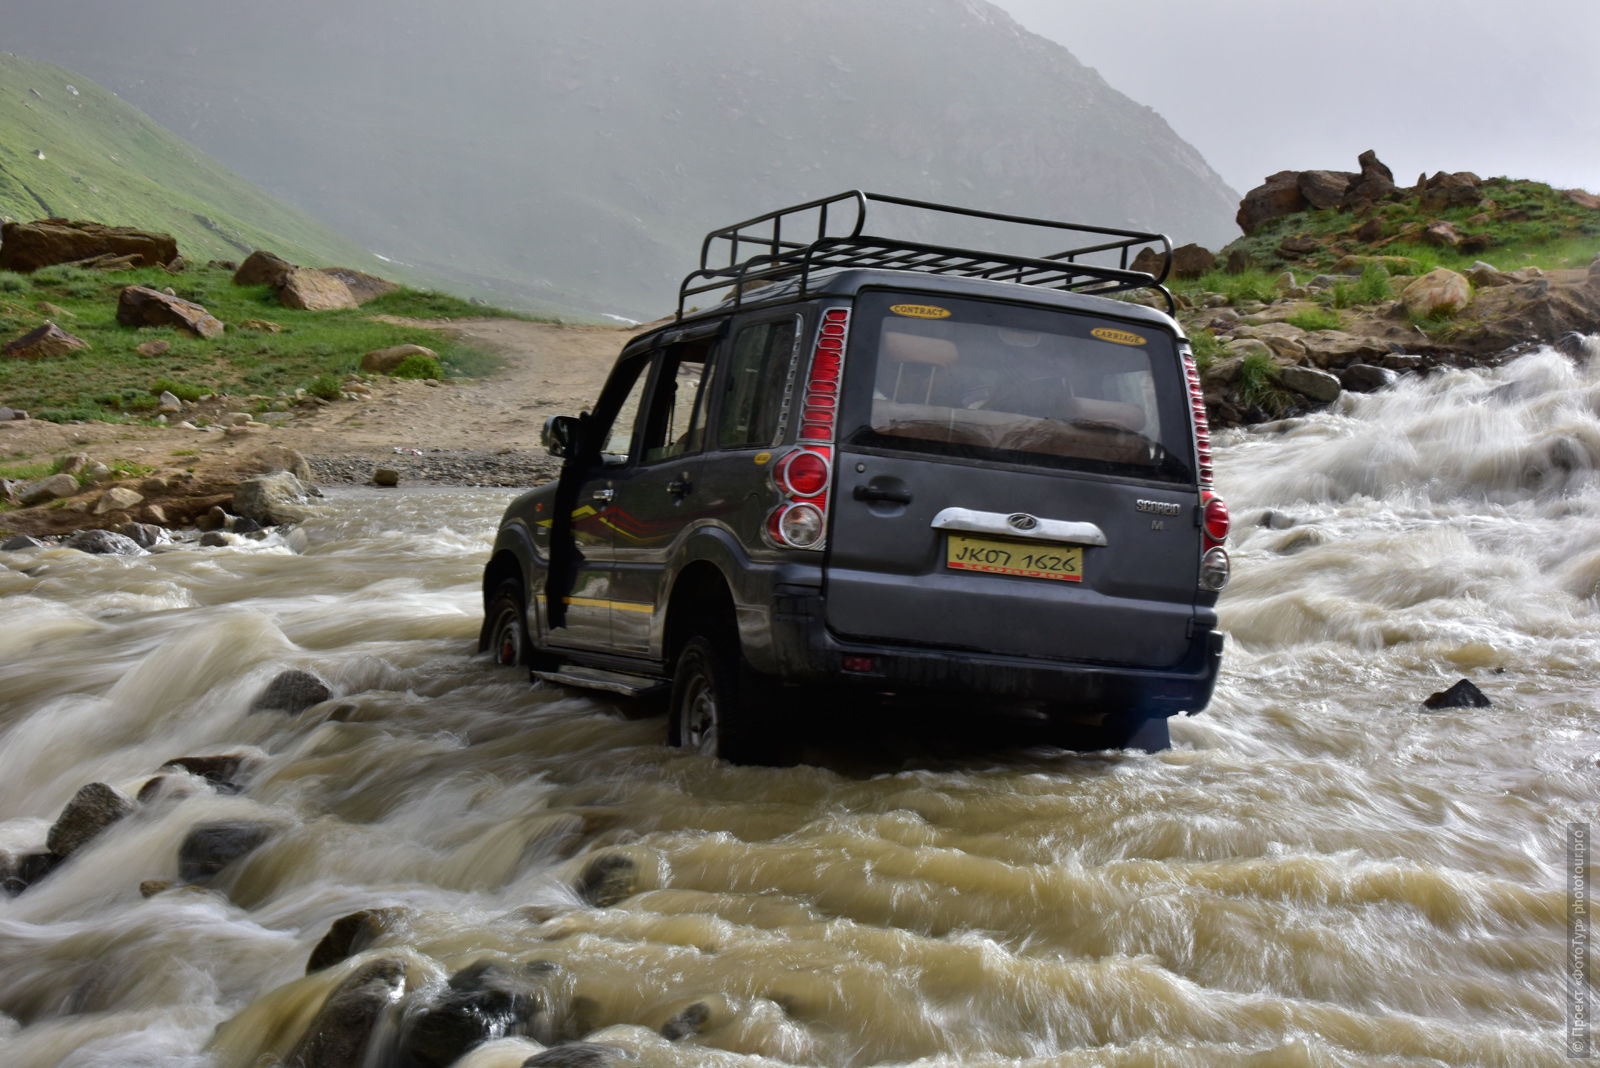 Машина, застрявшая в реке по дороге в Занскар, туры в Занскар.